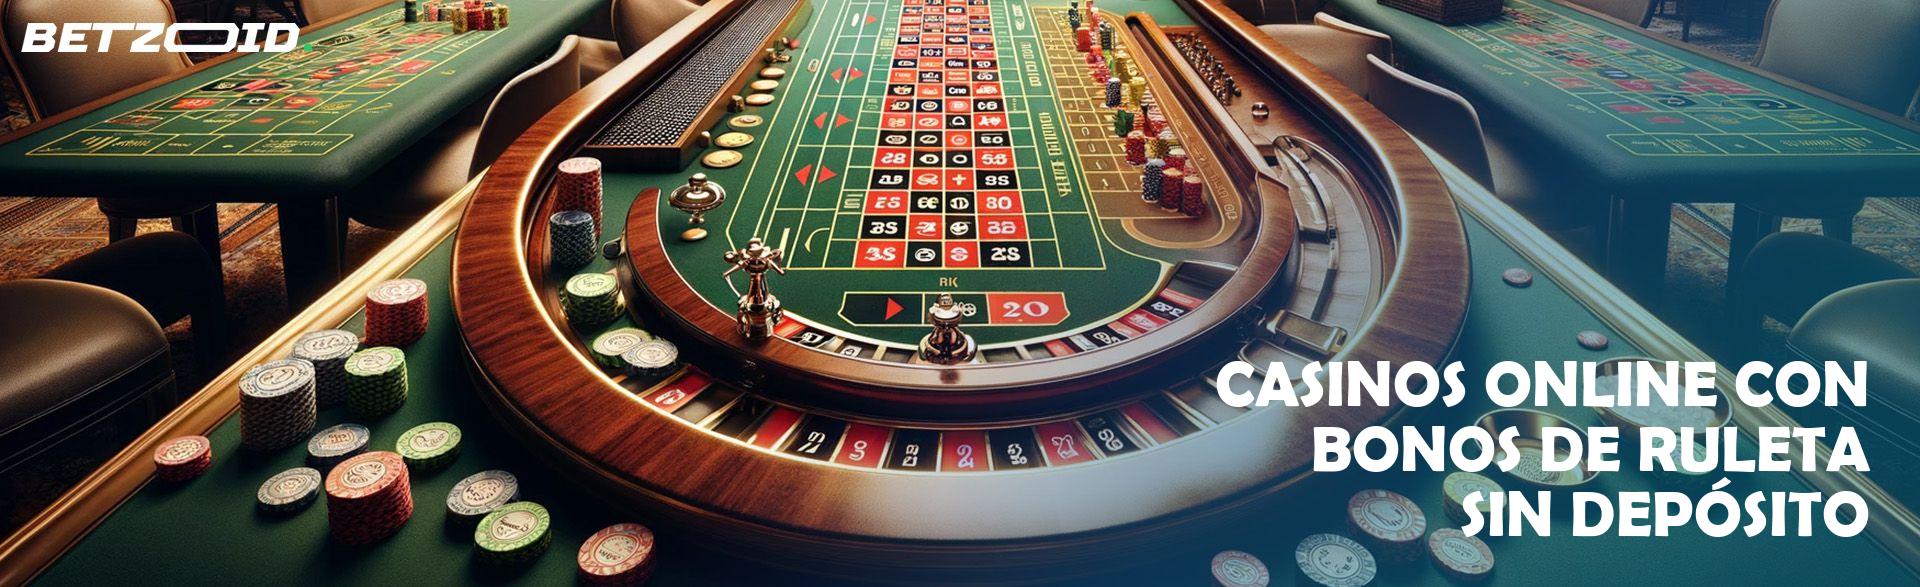 Casinos Online con Bonos de Ruleta sin Depósito.